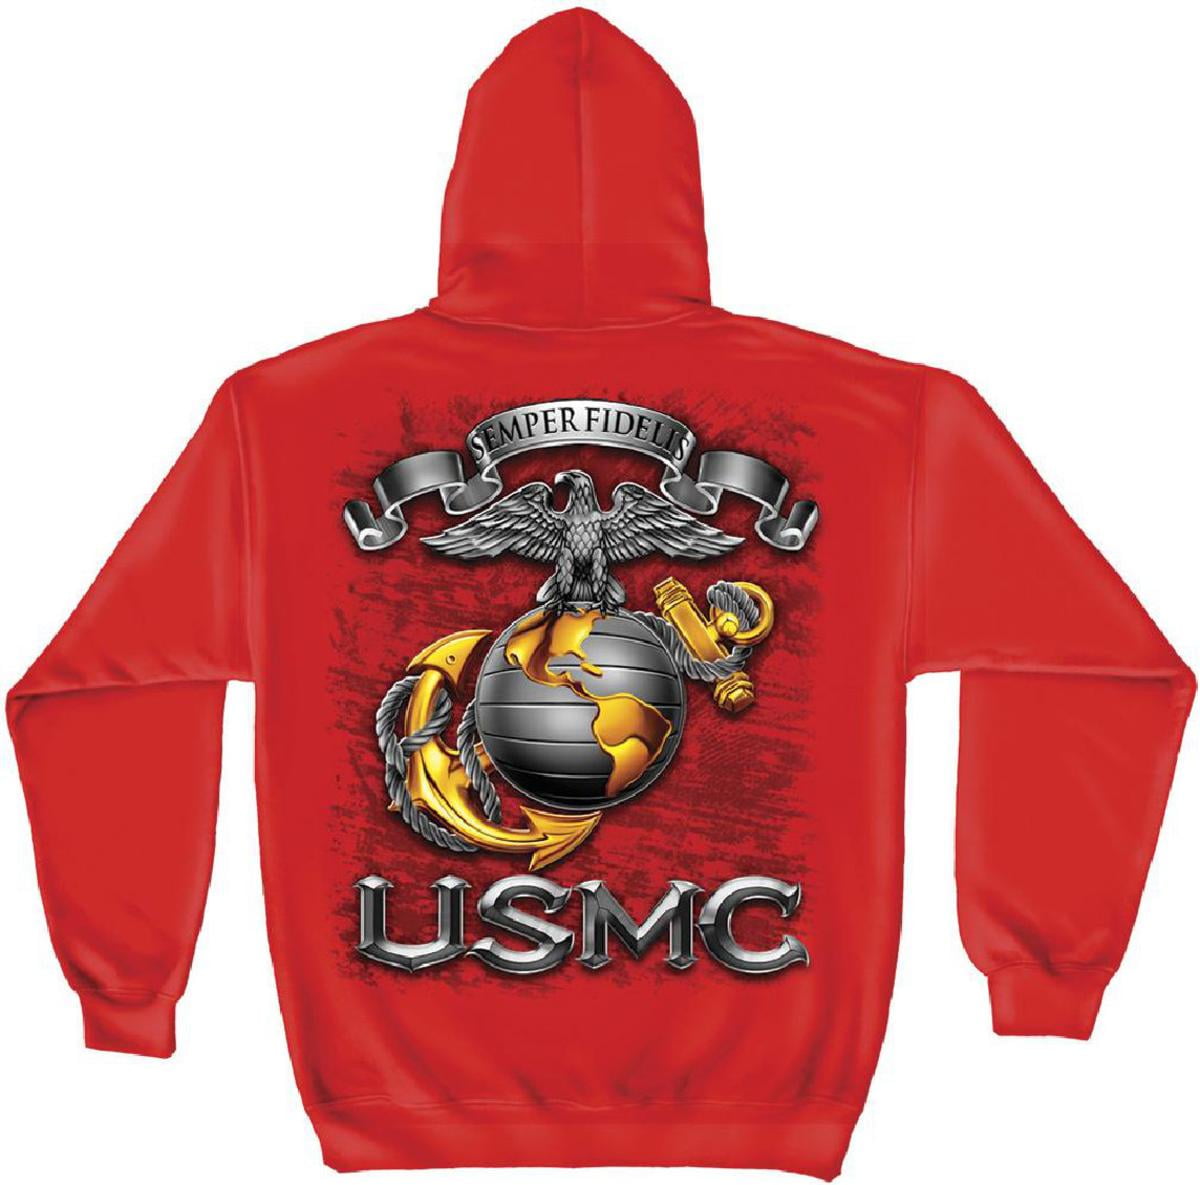 USMC Marine Corps Anchor Unisex Youth Boys and Girls Sweatshirt Baseball Uniform Jacket Sport Coat